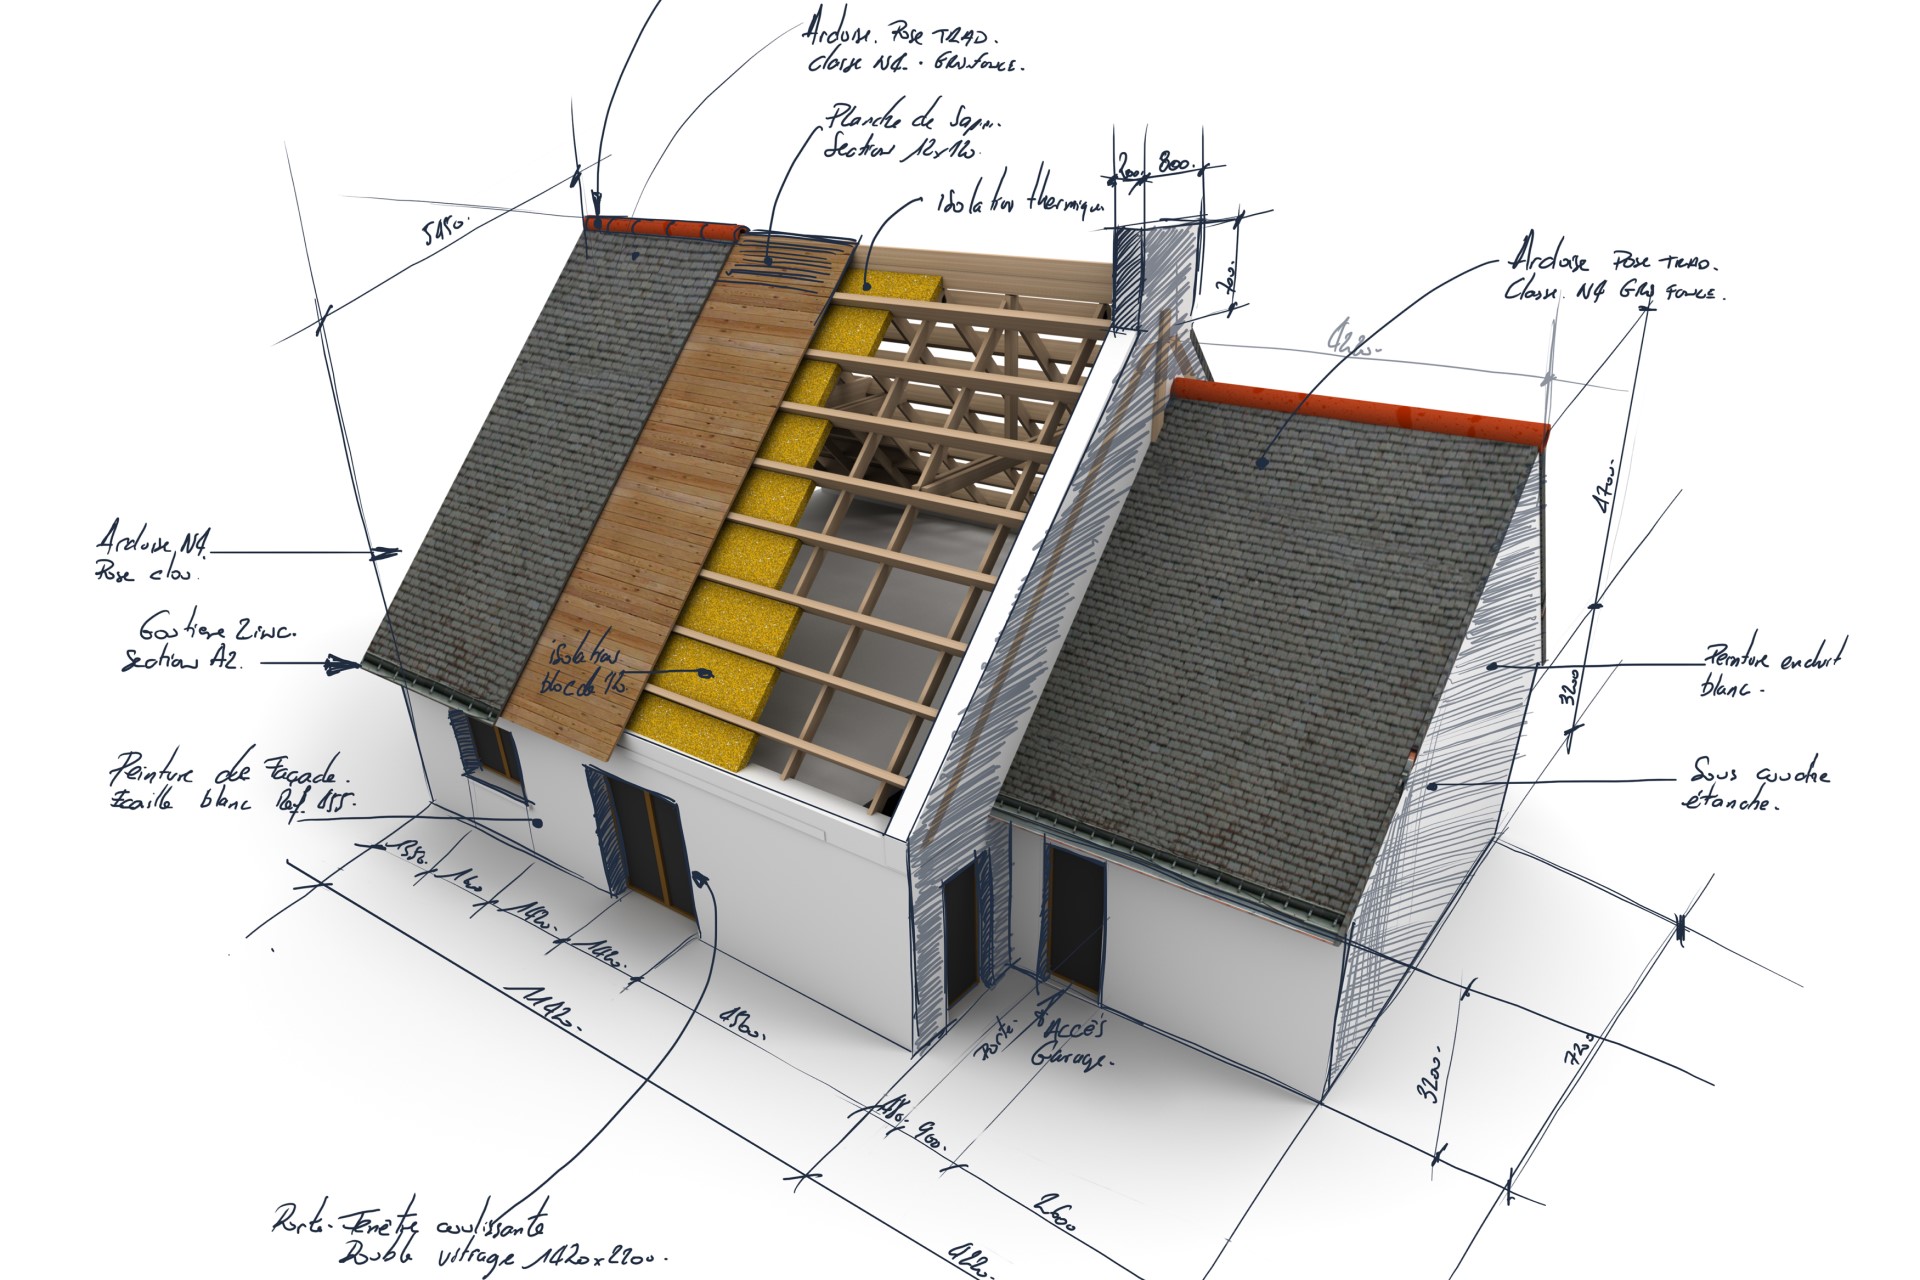 Projekt budowlany powinien zawierać informacje na temat rodzaju pokrycia dachowego